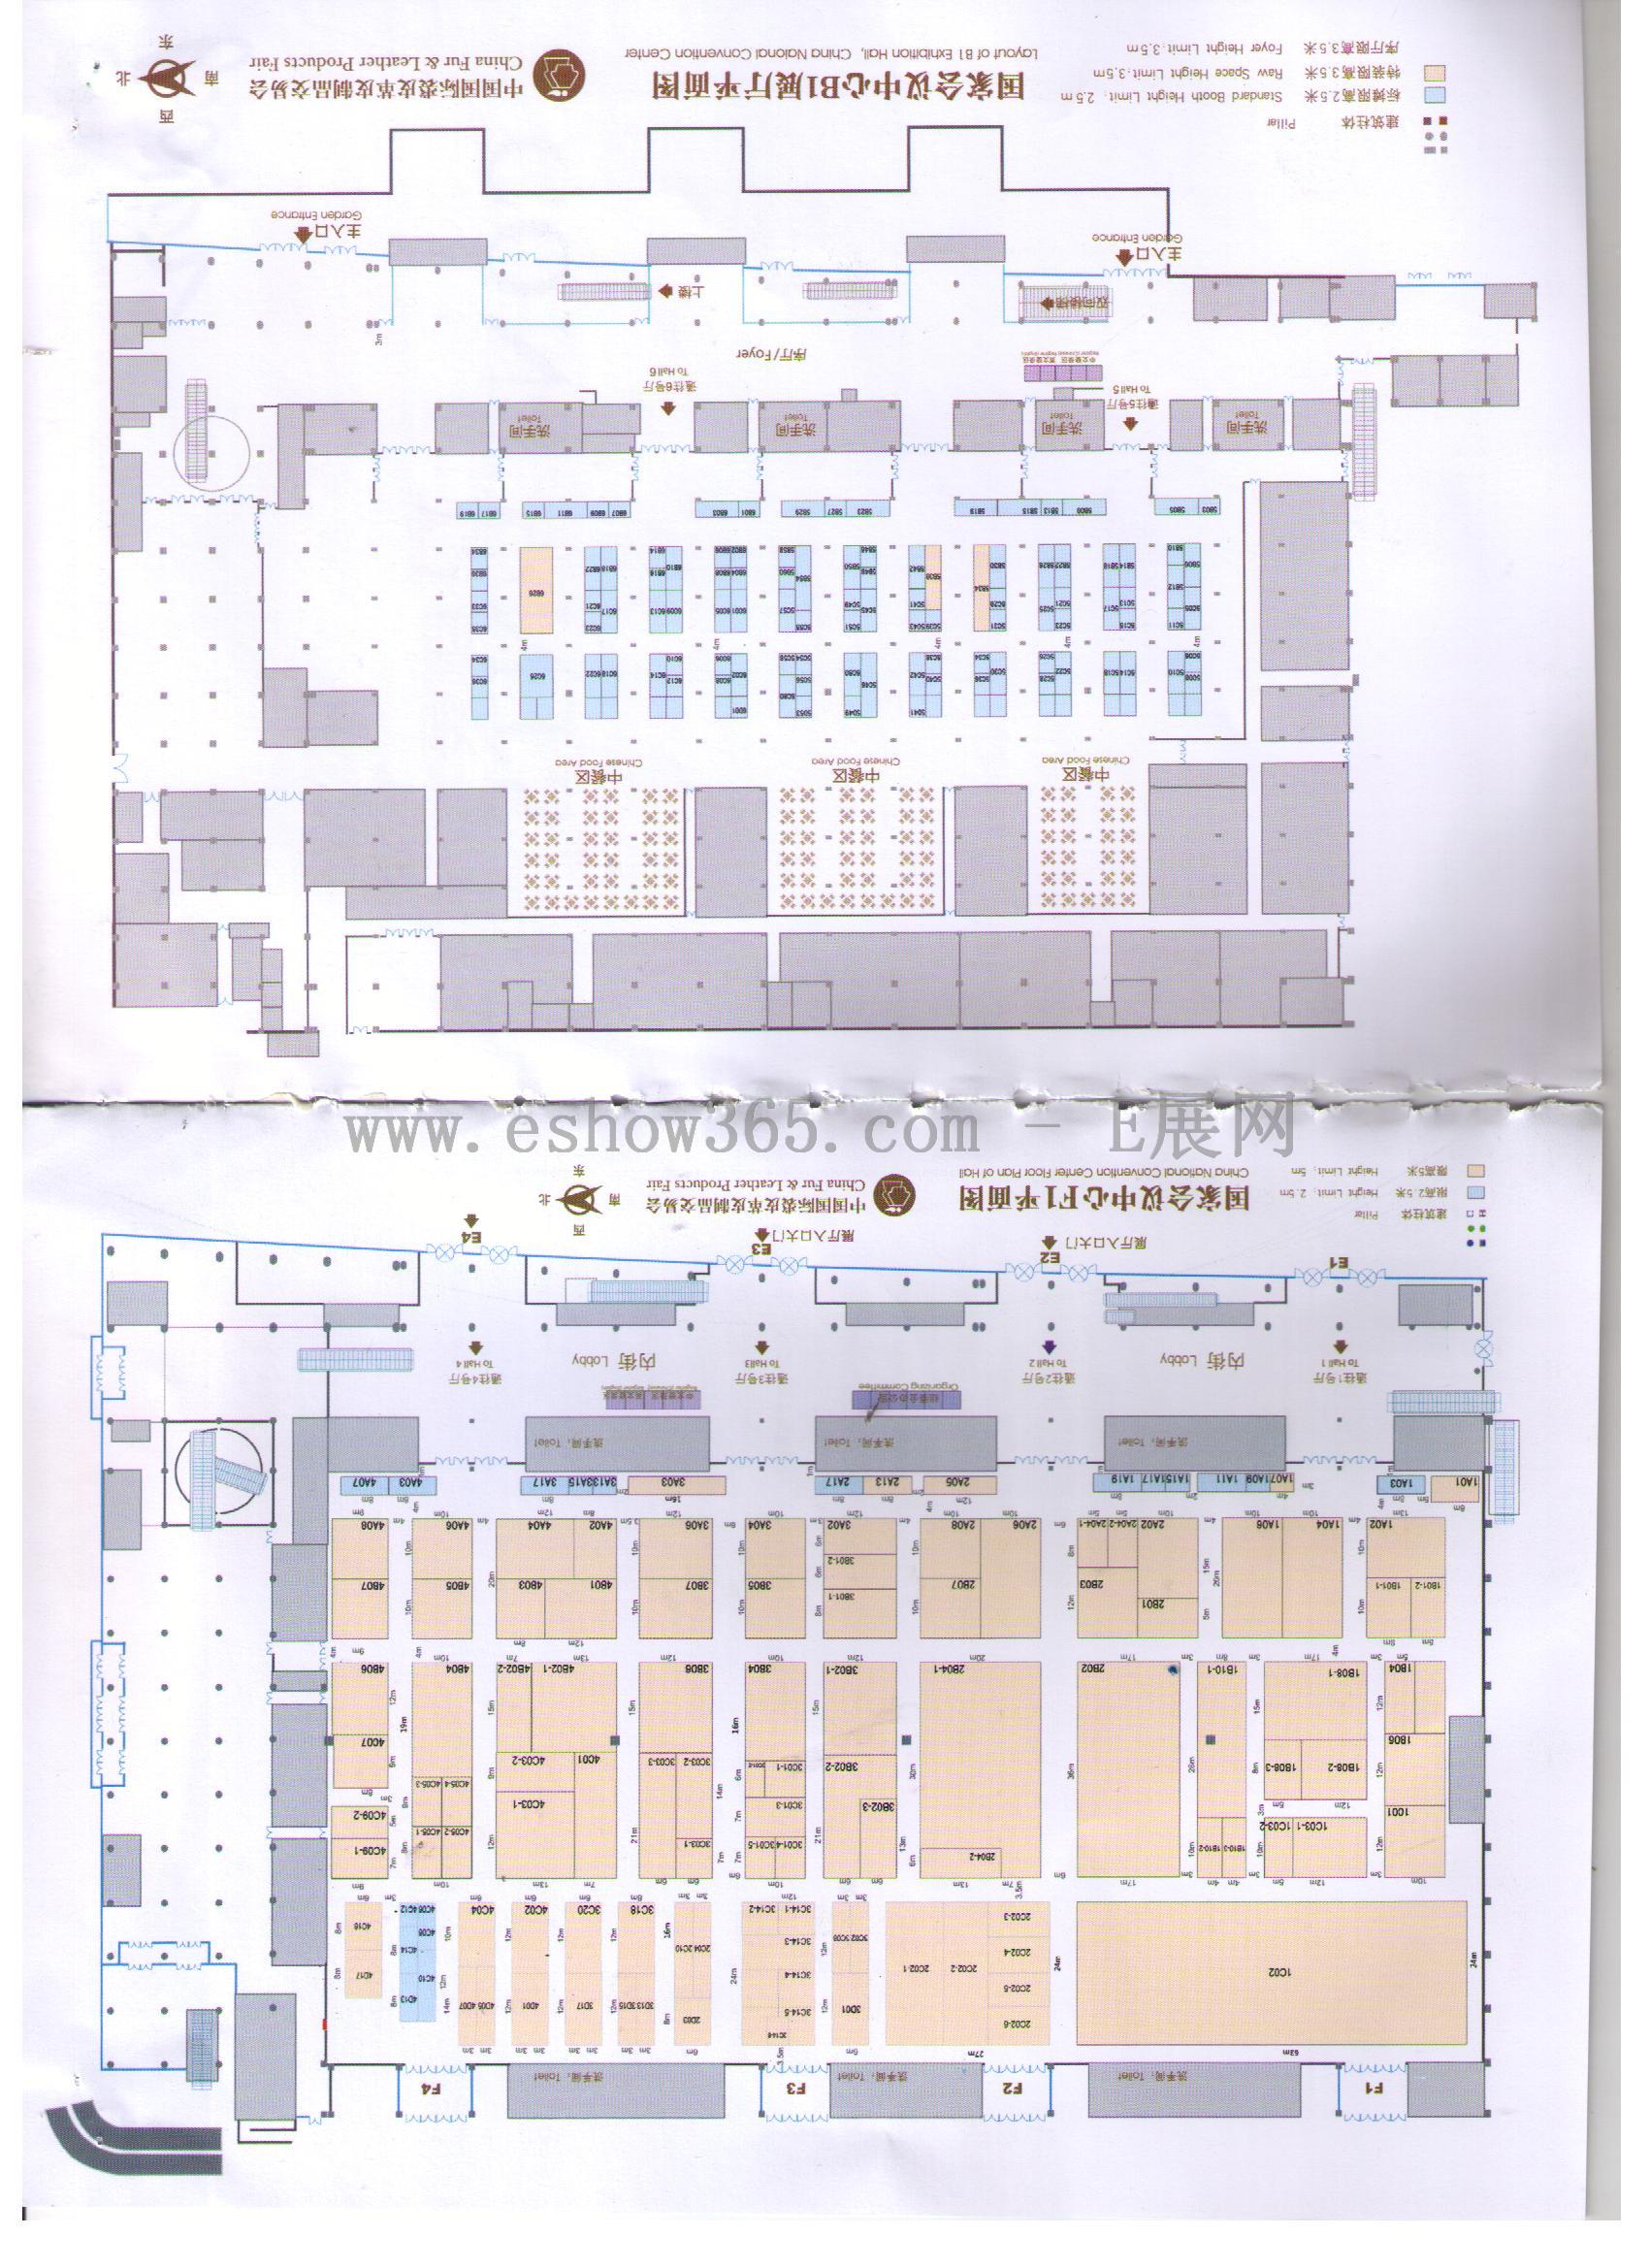 2013第39届中国国际裘皮革皮制品交易会的平面图